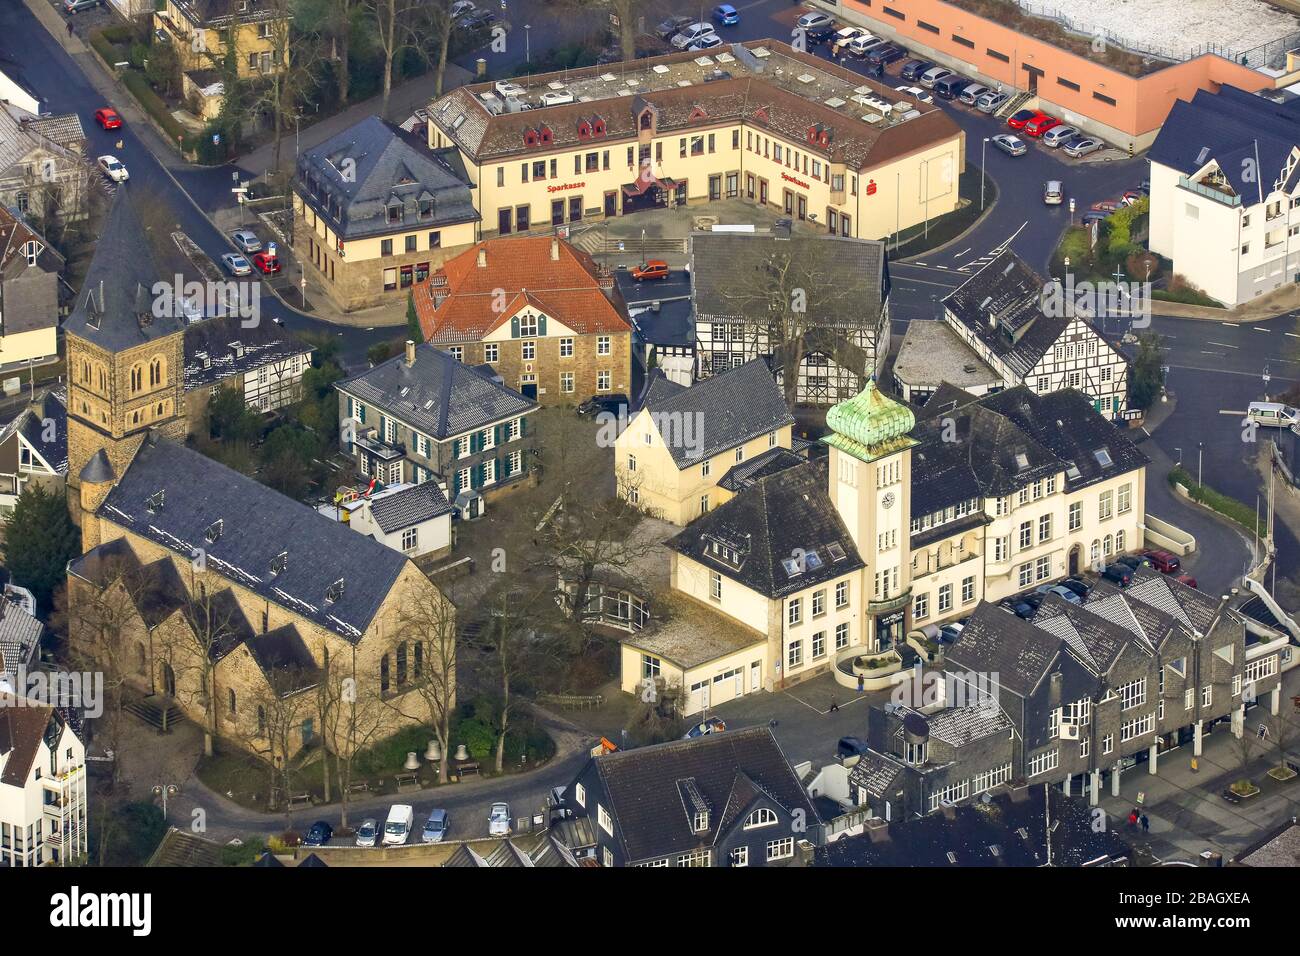 Rathaus und Stiftskirche in der Innenstadt von Herdecke, 04.02.2015, Luftbild, Town hall and church St. Marien in the center of Herdecke, 04.02.2015, aerial view, Germany, North Rhine-Westphalia, Ruhr Area, Herdecke Stock Photo